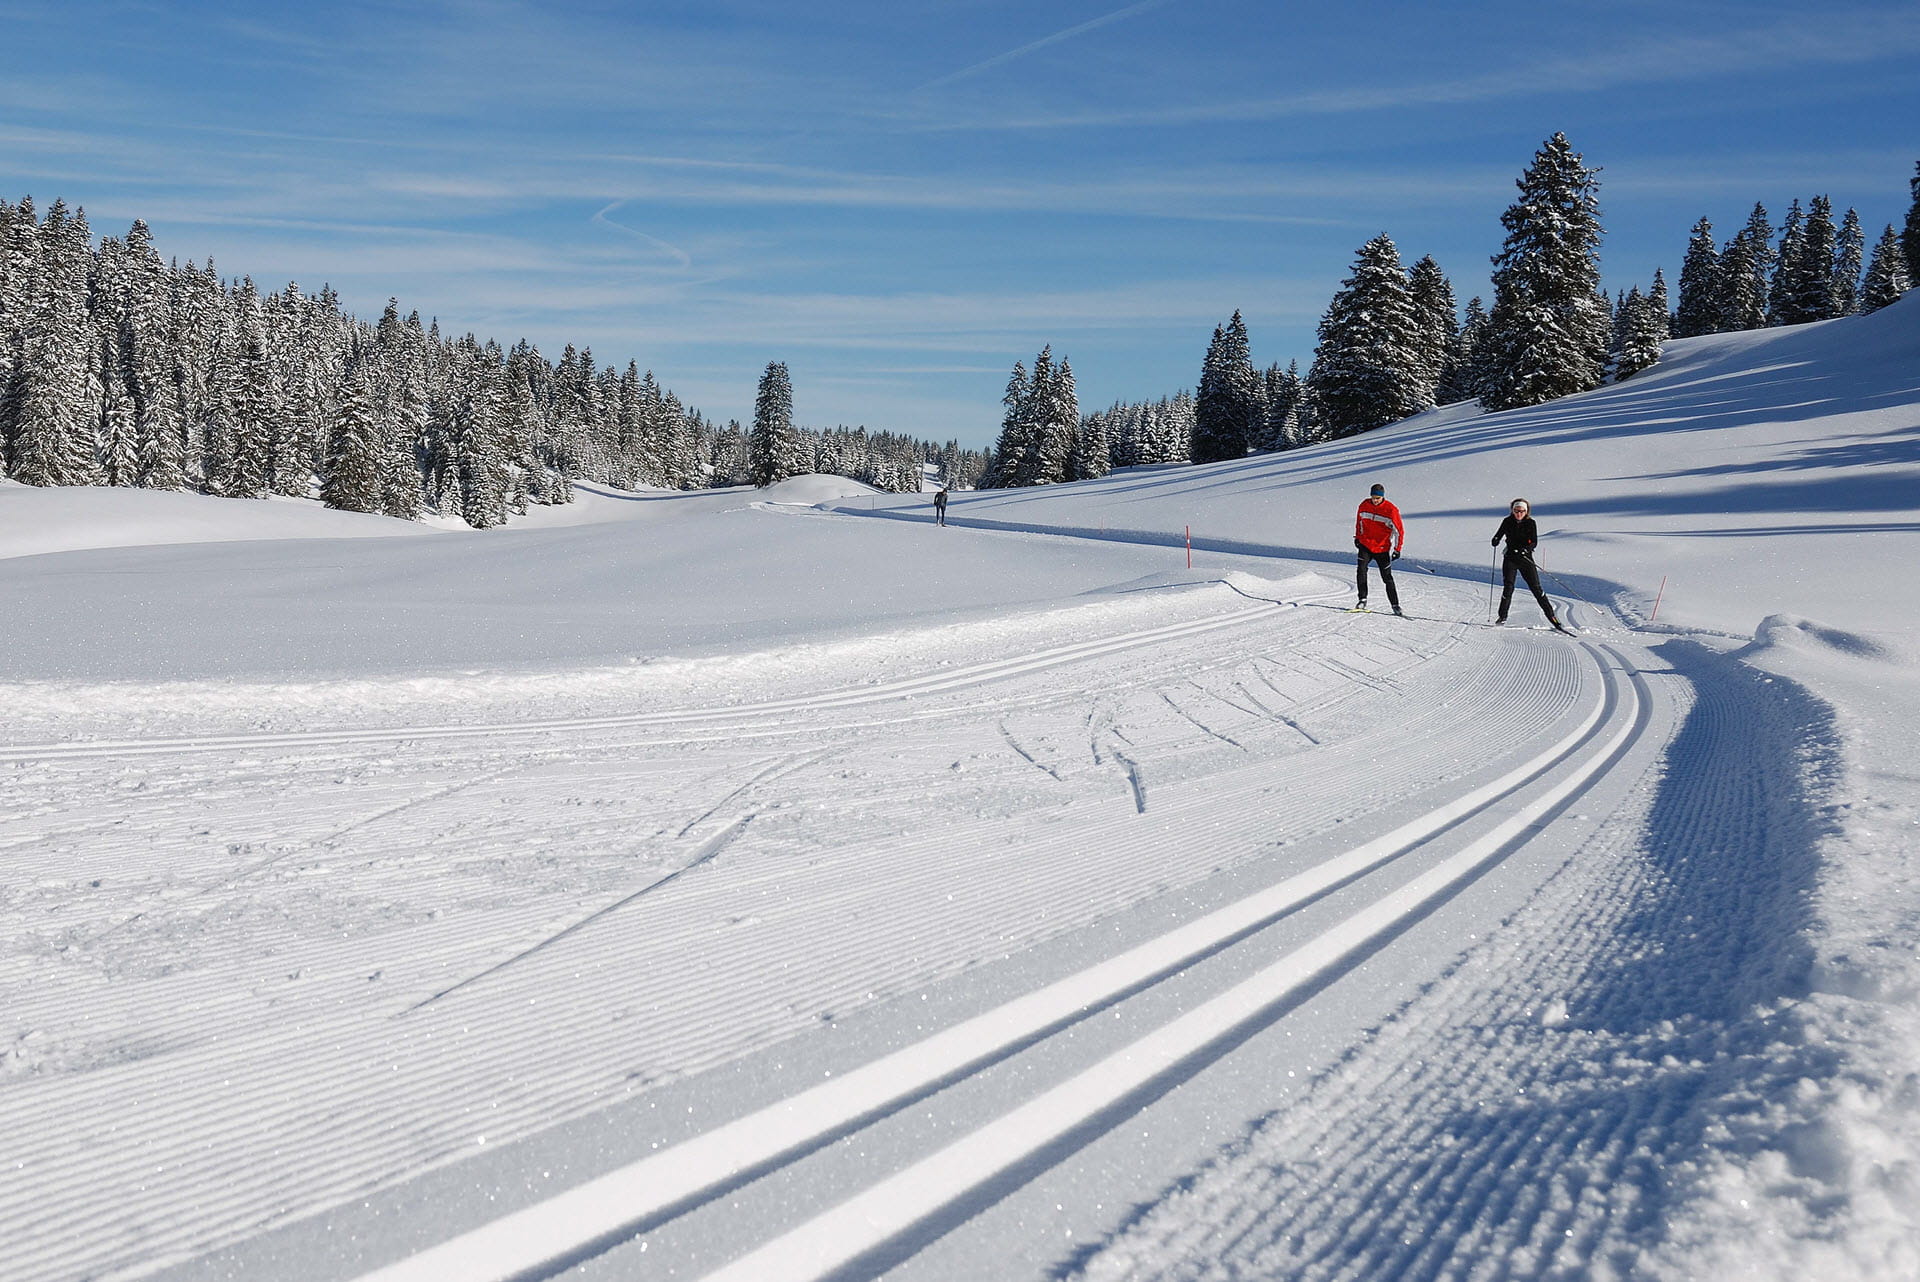 Des pistes fantastiques sous le soleil vous invitent à faire du ski de fond.